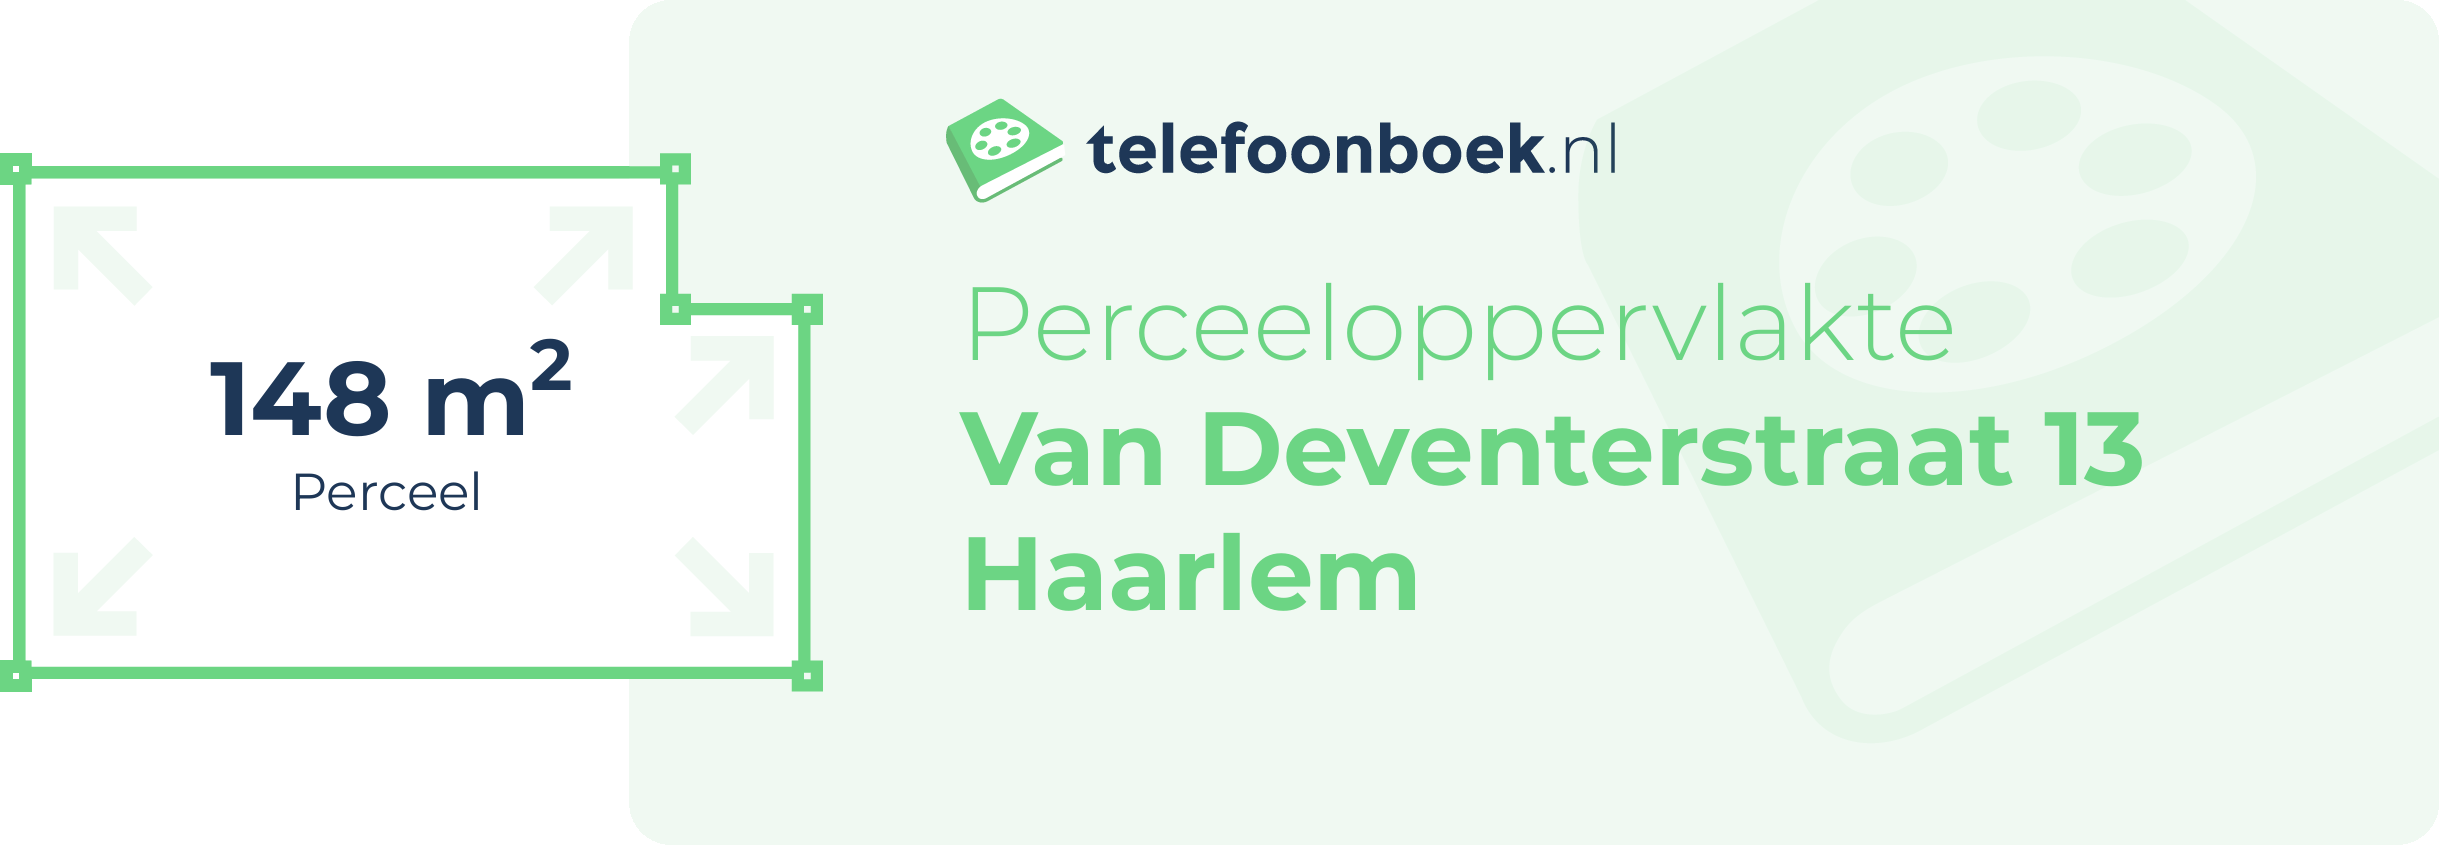 Perceeloppervlakte Van Deventerstraat 13 Haarlem